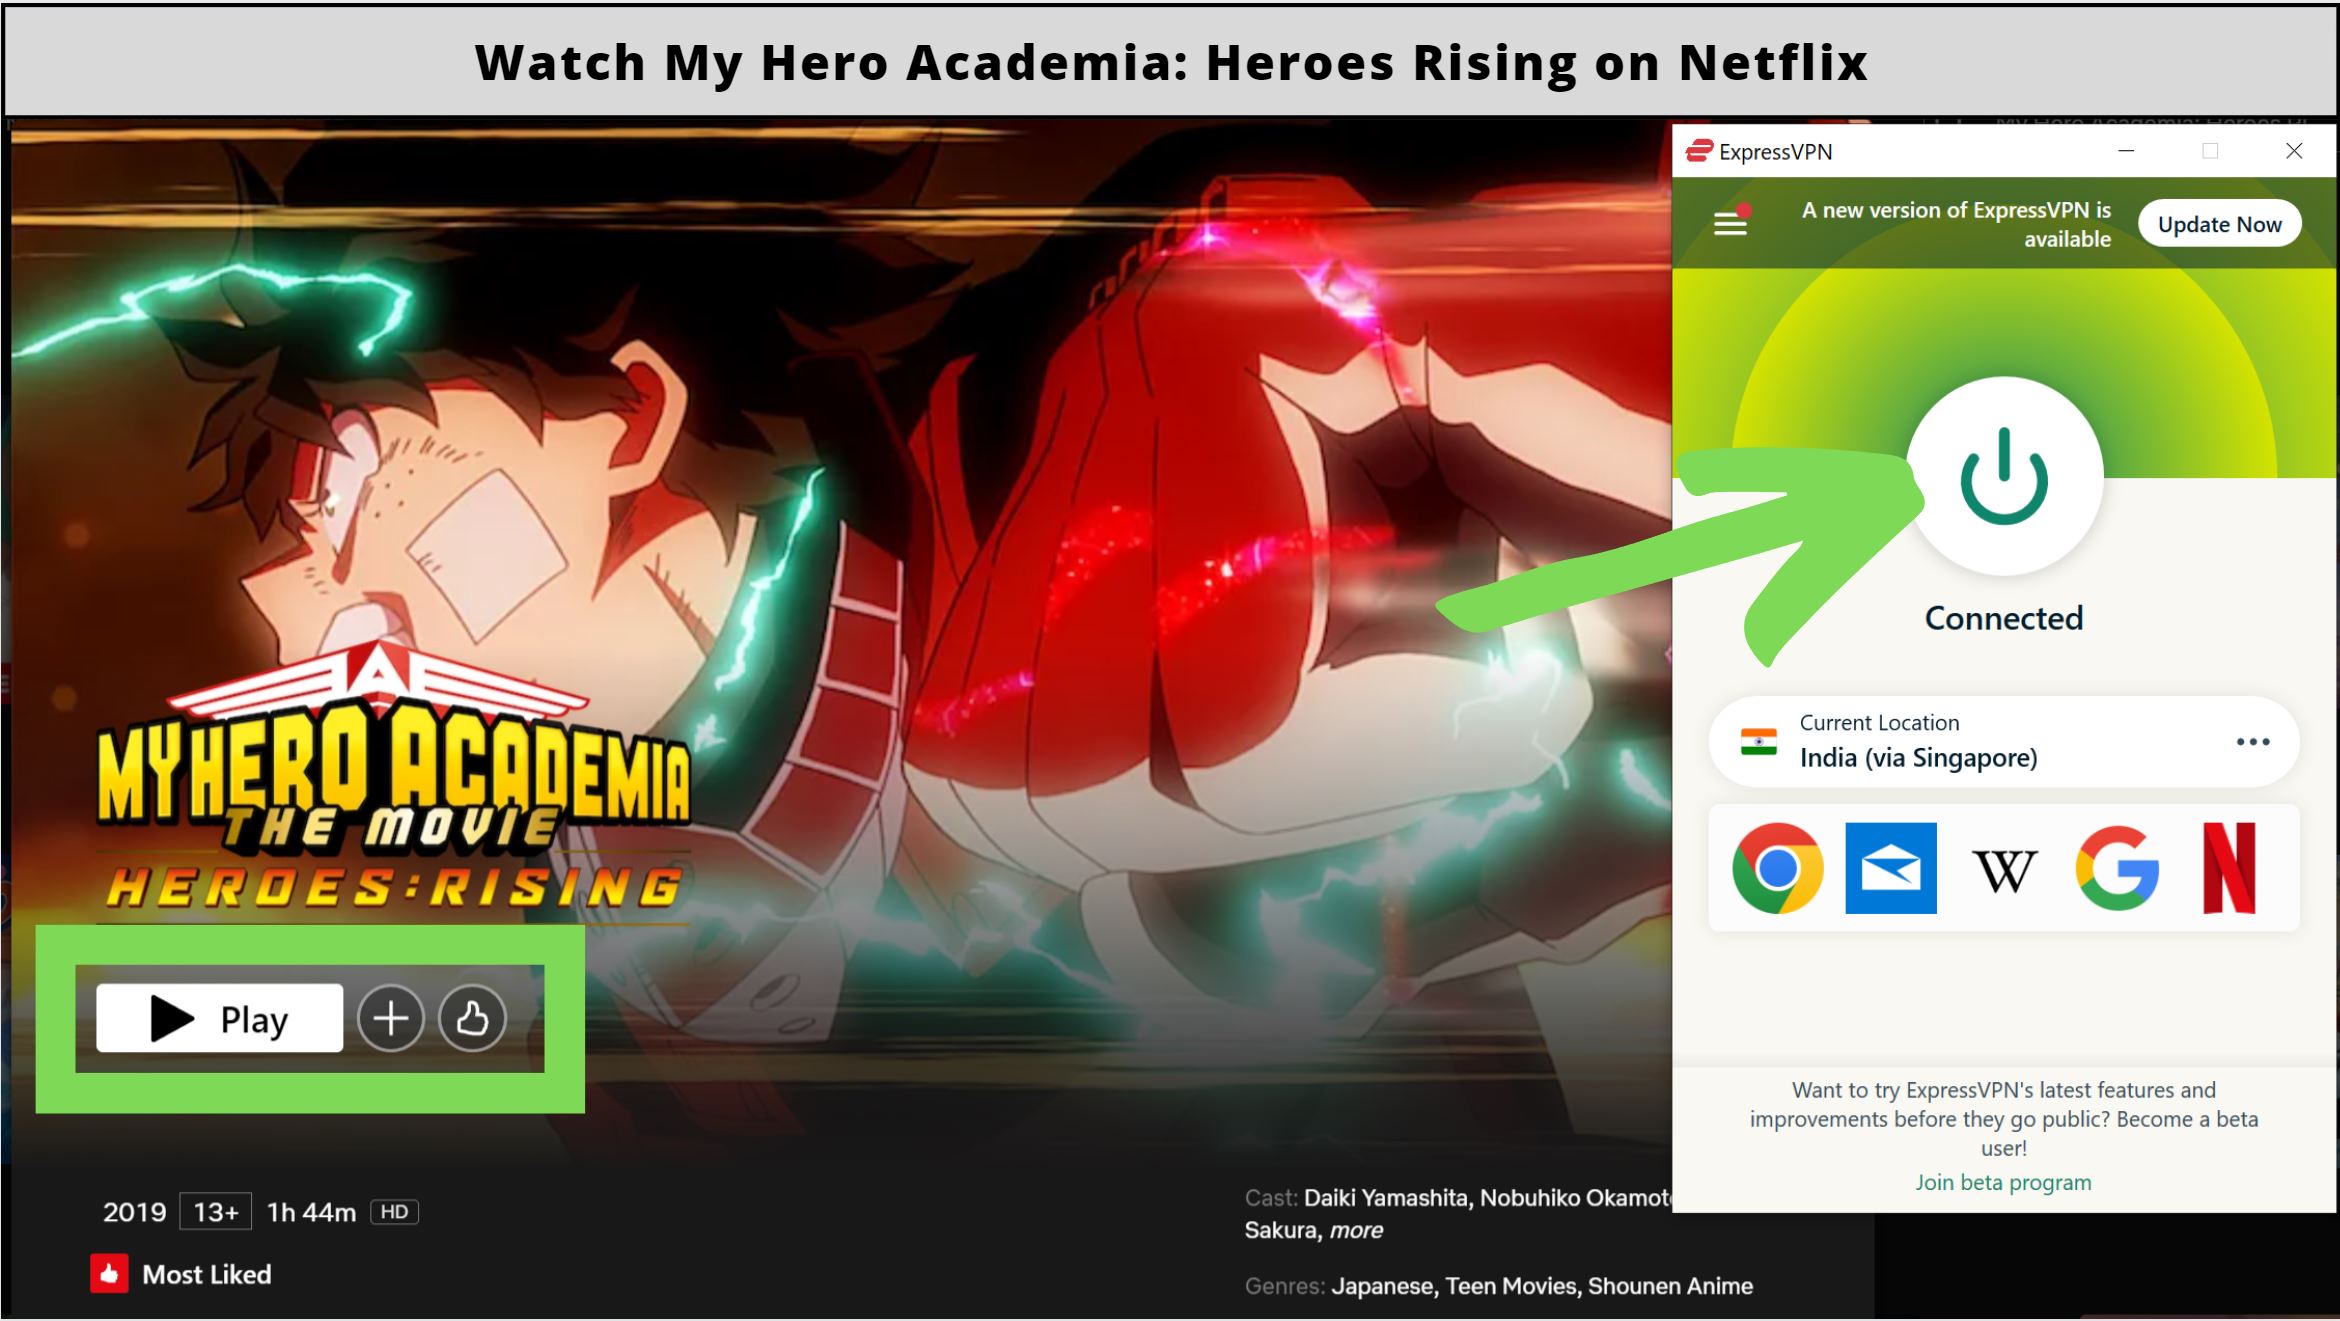 Is My Hero Academia: Heroes Rising on Netflix?